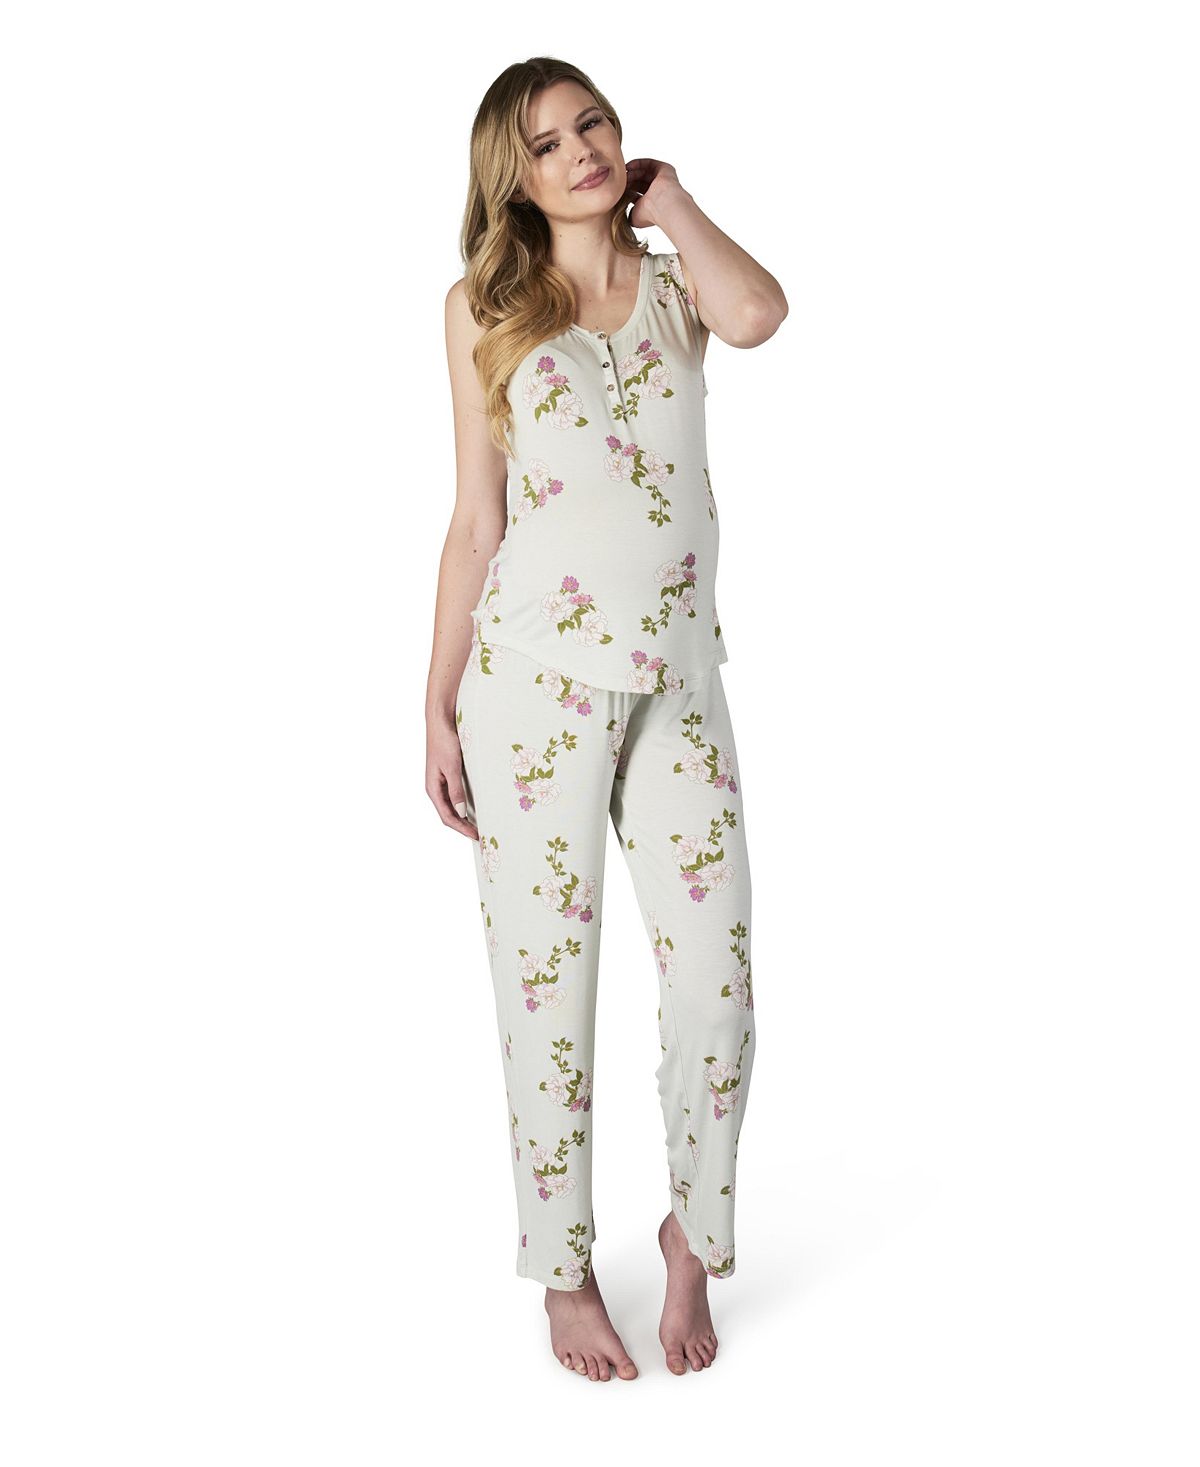 Женский пижамный комплект joy tank & pants для беременных и кормящих мам Everly Grey